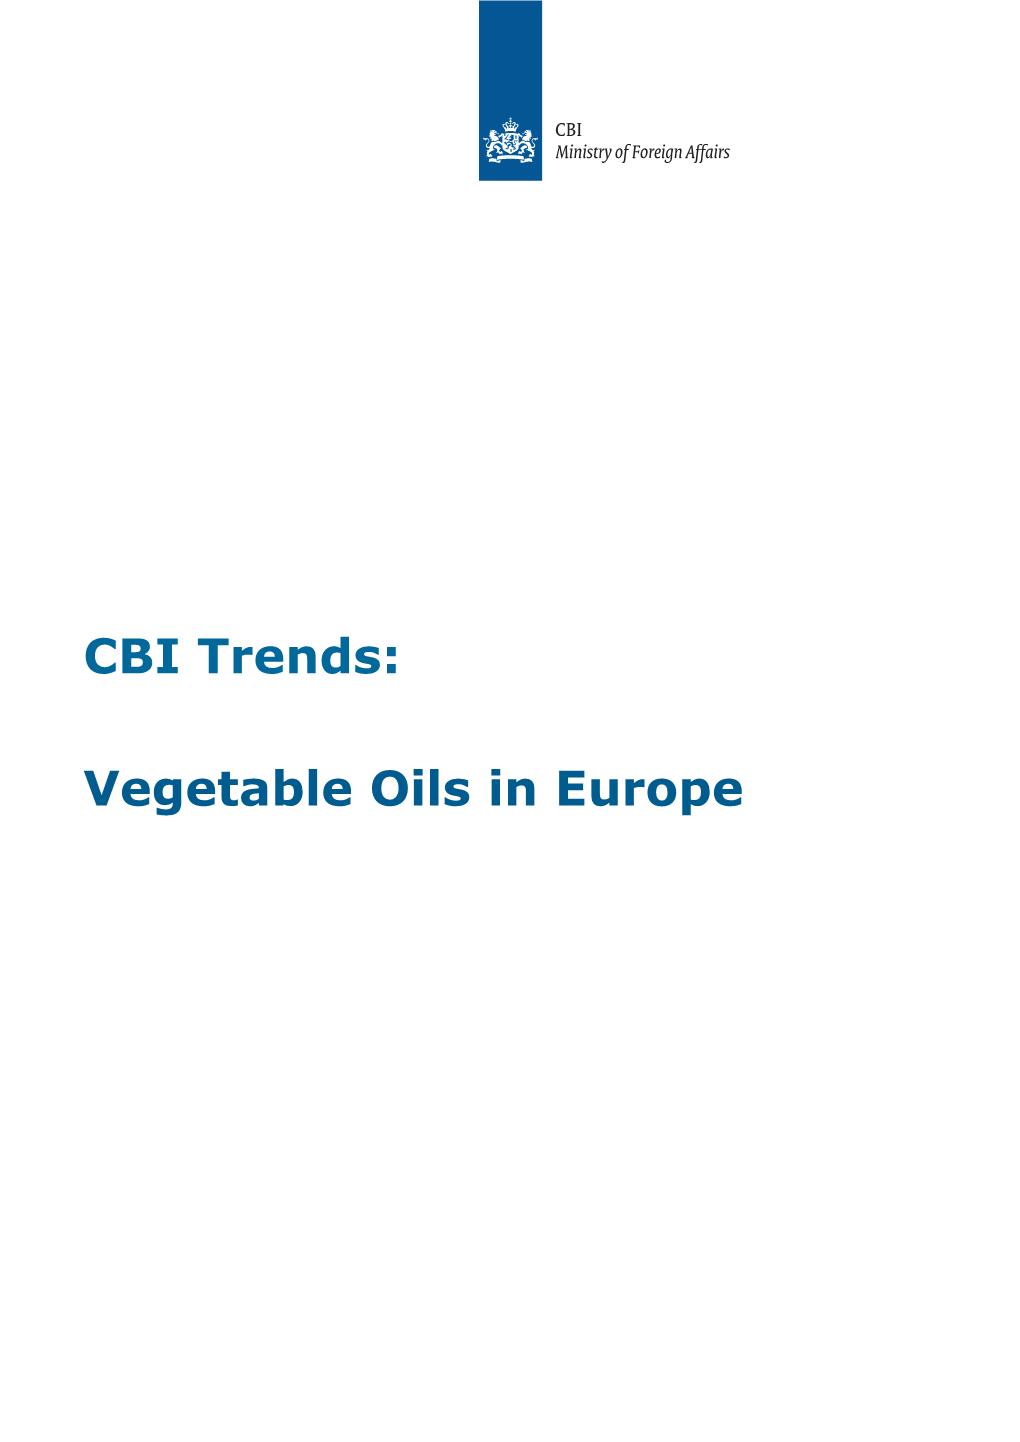 Vegetable Oils in Europe